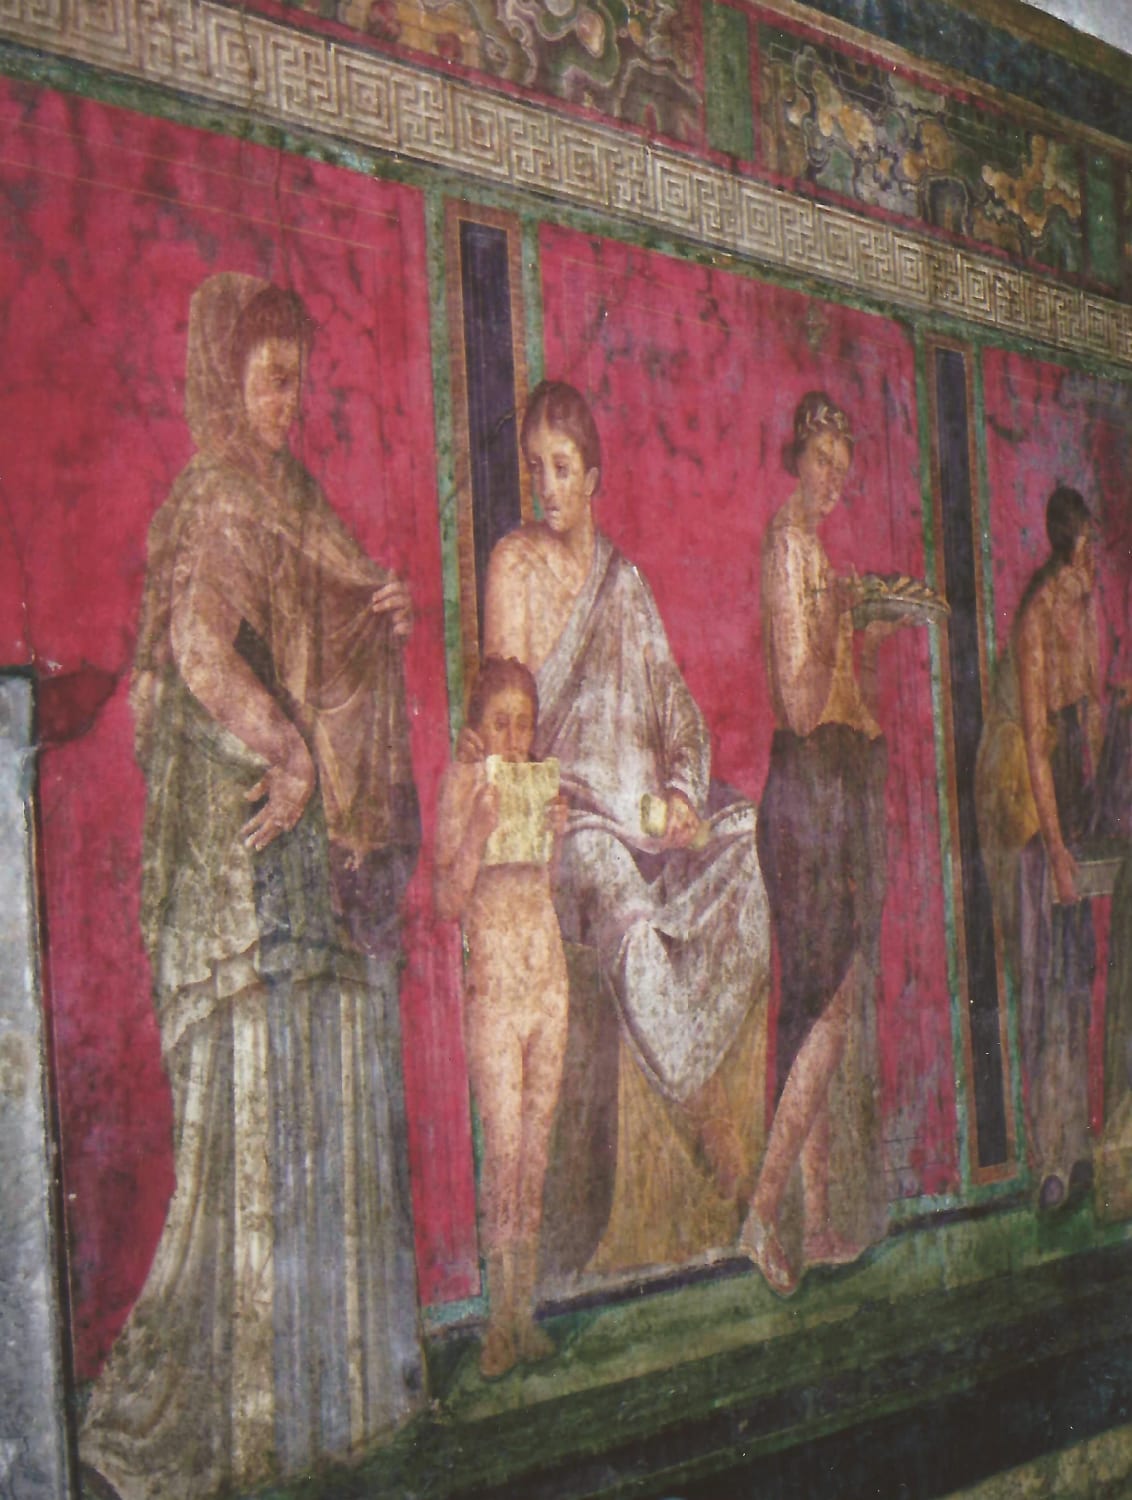 A wall - Pompeii, Italy - frescos still hauntingly beautiful in many ruins.... | Pompeii italy, Ancient romans, Art history